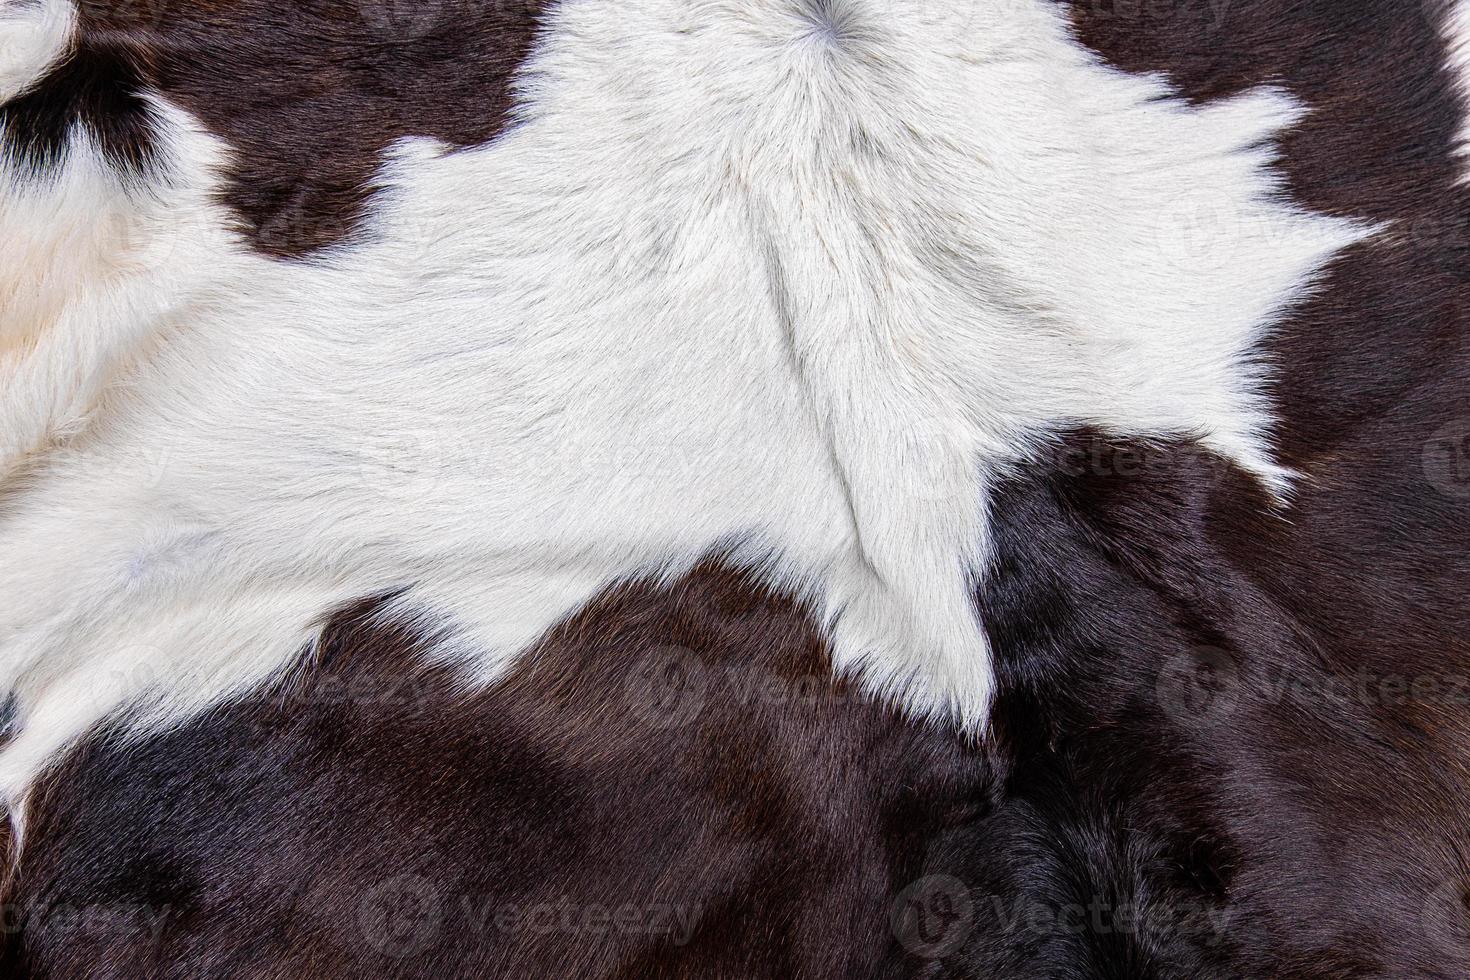 brauner Kuhfellmantel mit Fell schwarz weiß und braunen Flecken foto